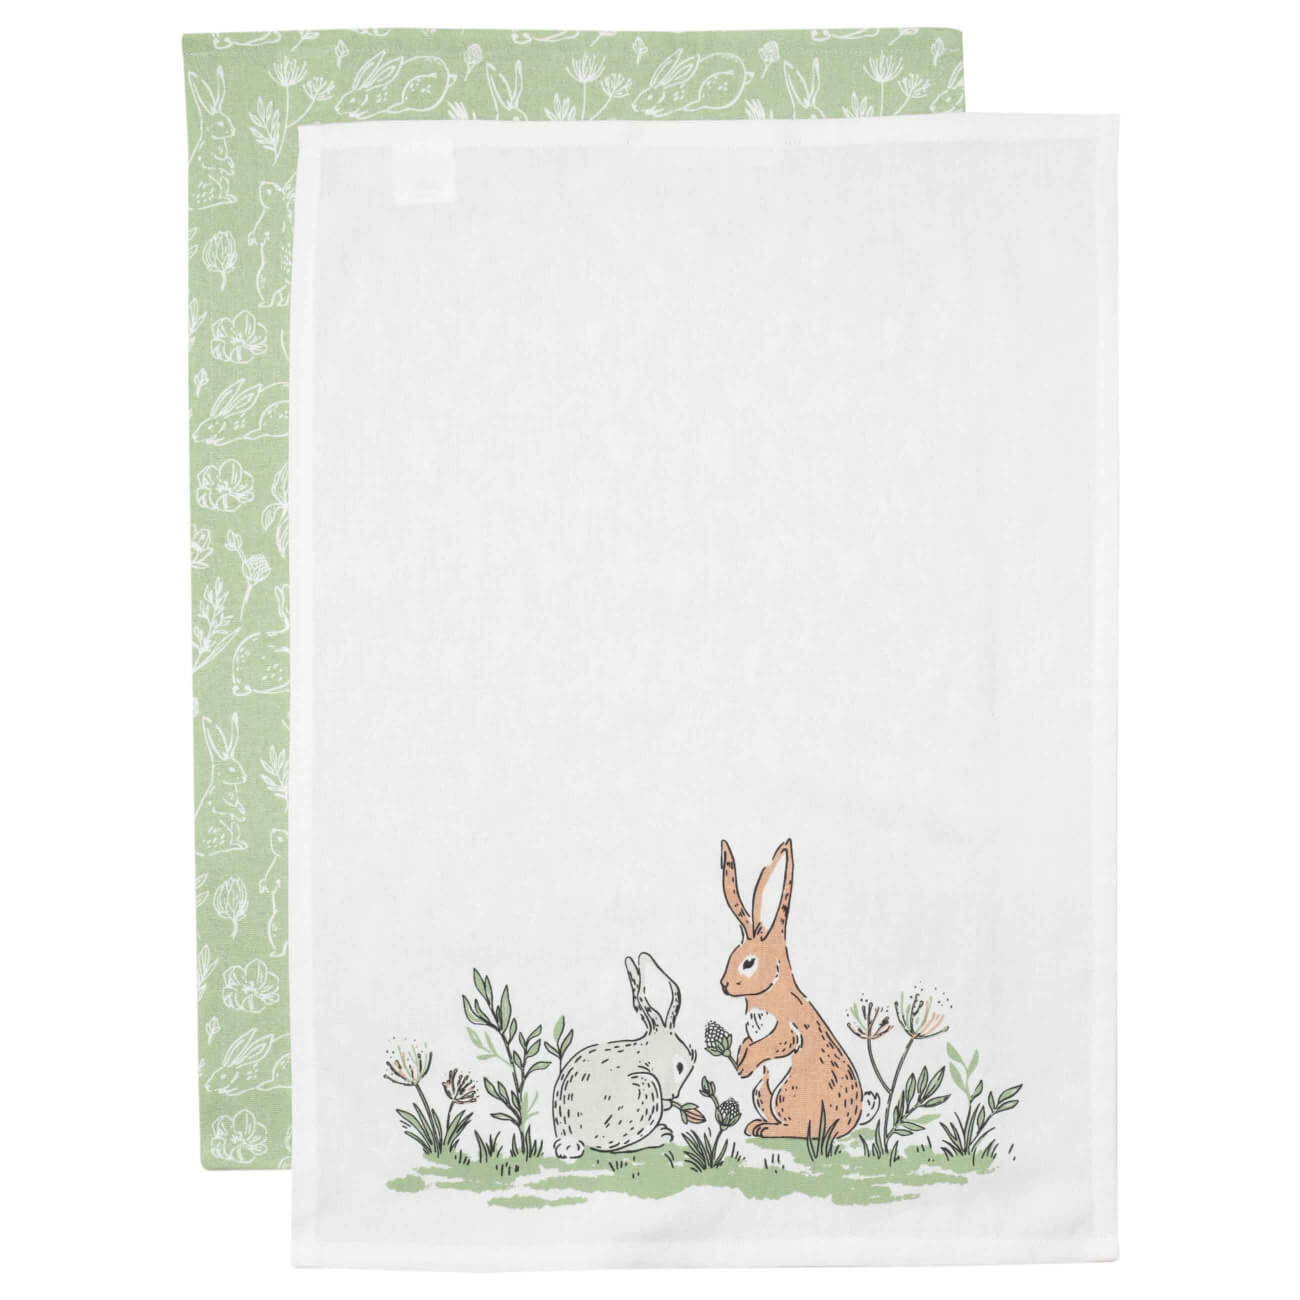 Полотенце кухонное, 40х60 см, 2 шт, хлопок, белое/зеленое, Кролики, Easter полотенце кухонное 40x60 см хлопок белое кролик natural easter